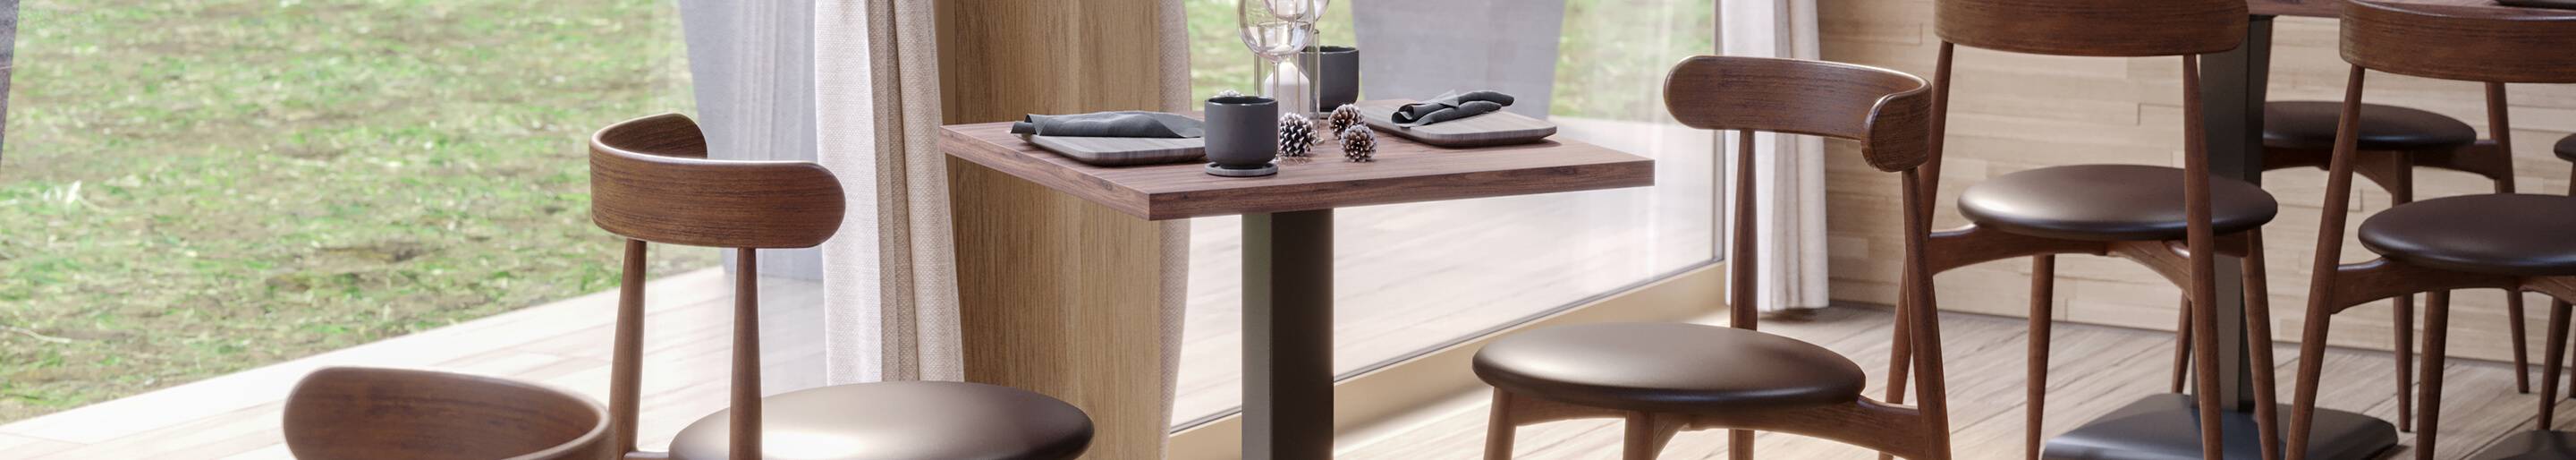 Indoor Holzstühle für Gastronomie oder Hotellerie